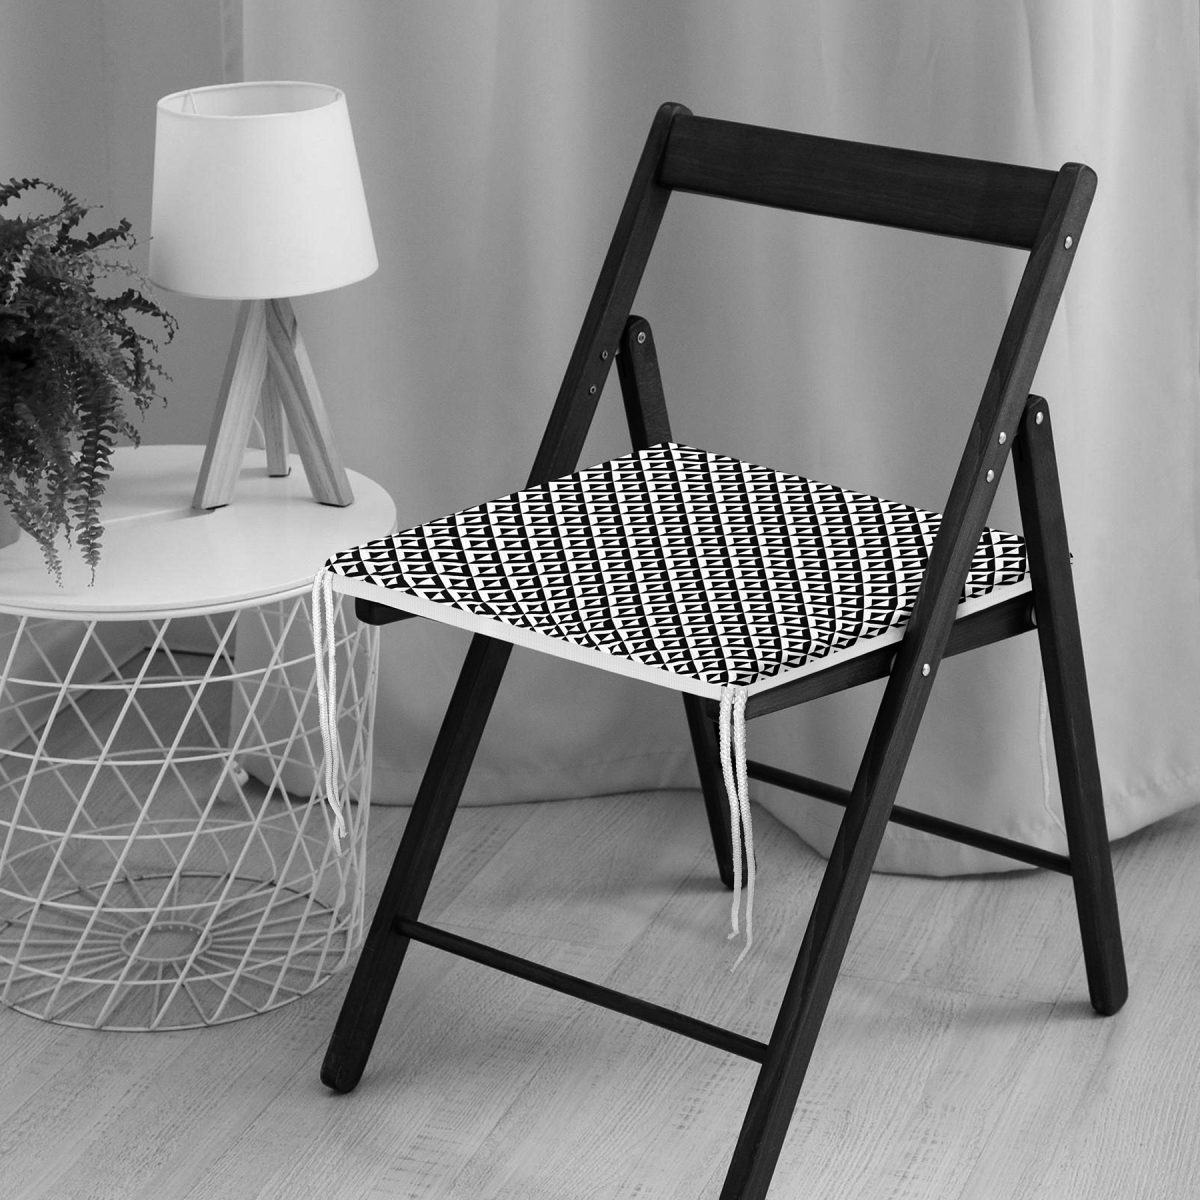 Siyah Beyaz Üçgen Geometrik Desenli Dijital Baskılı Fermuarlı Sandalye Minderi Realhomes